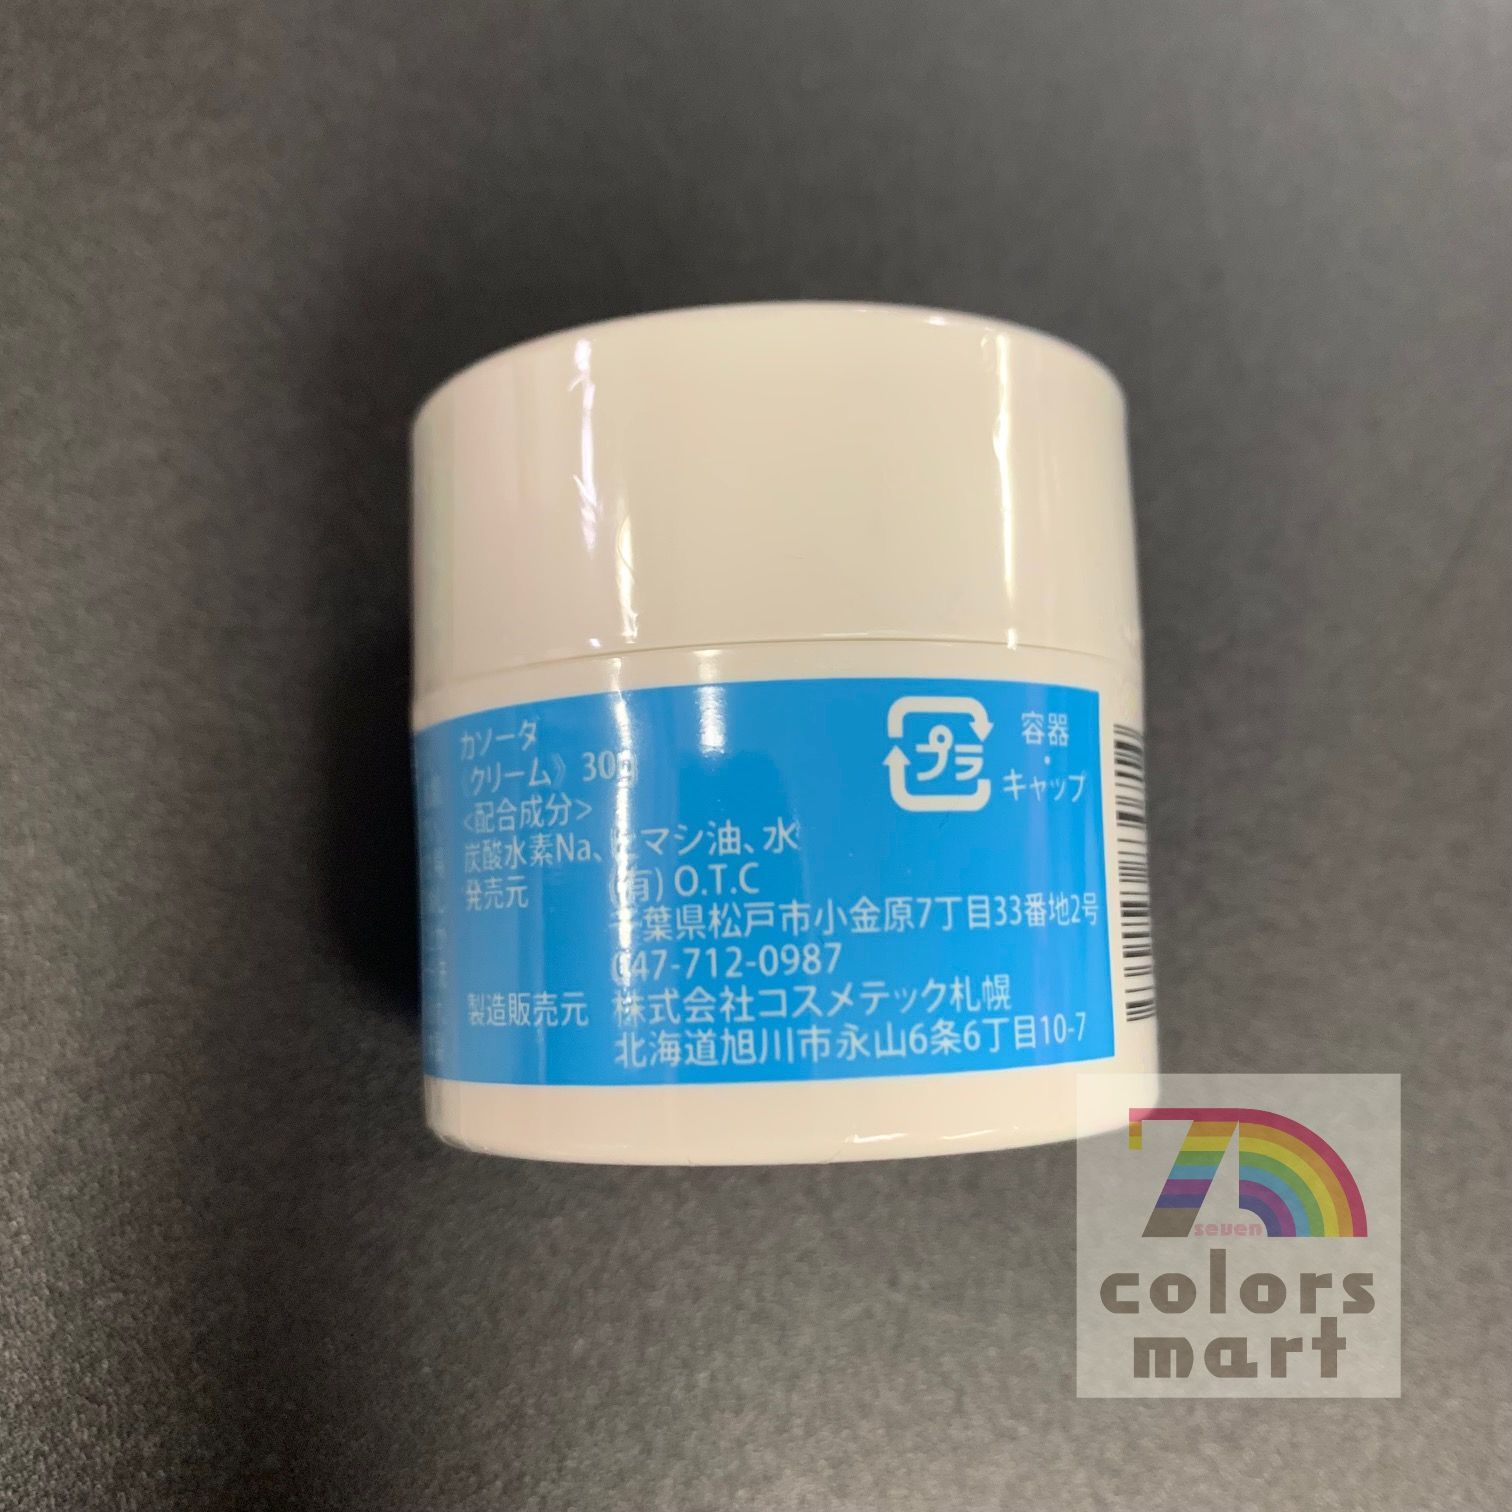 普通郵便》日本製 カソーダクリーム 30g【日本正規品】 - メルカリ